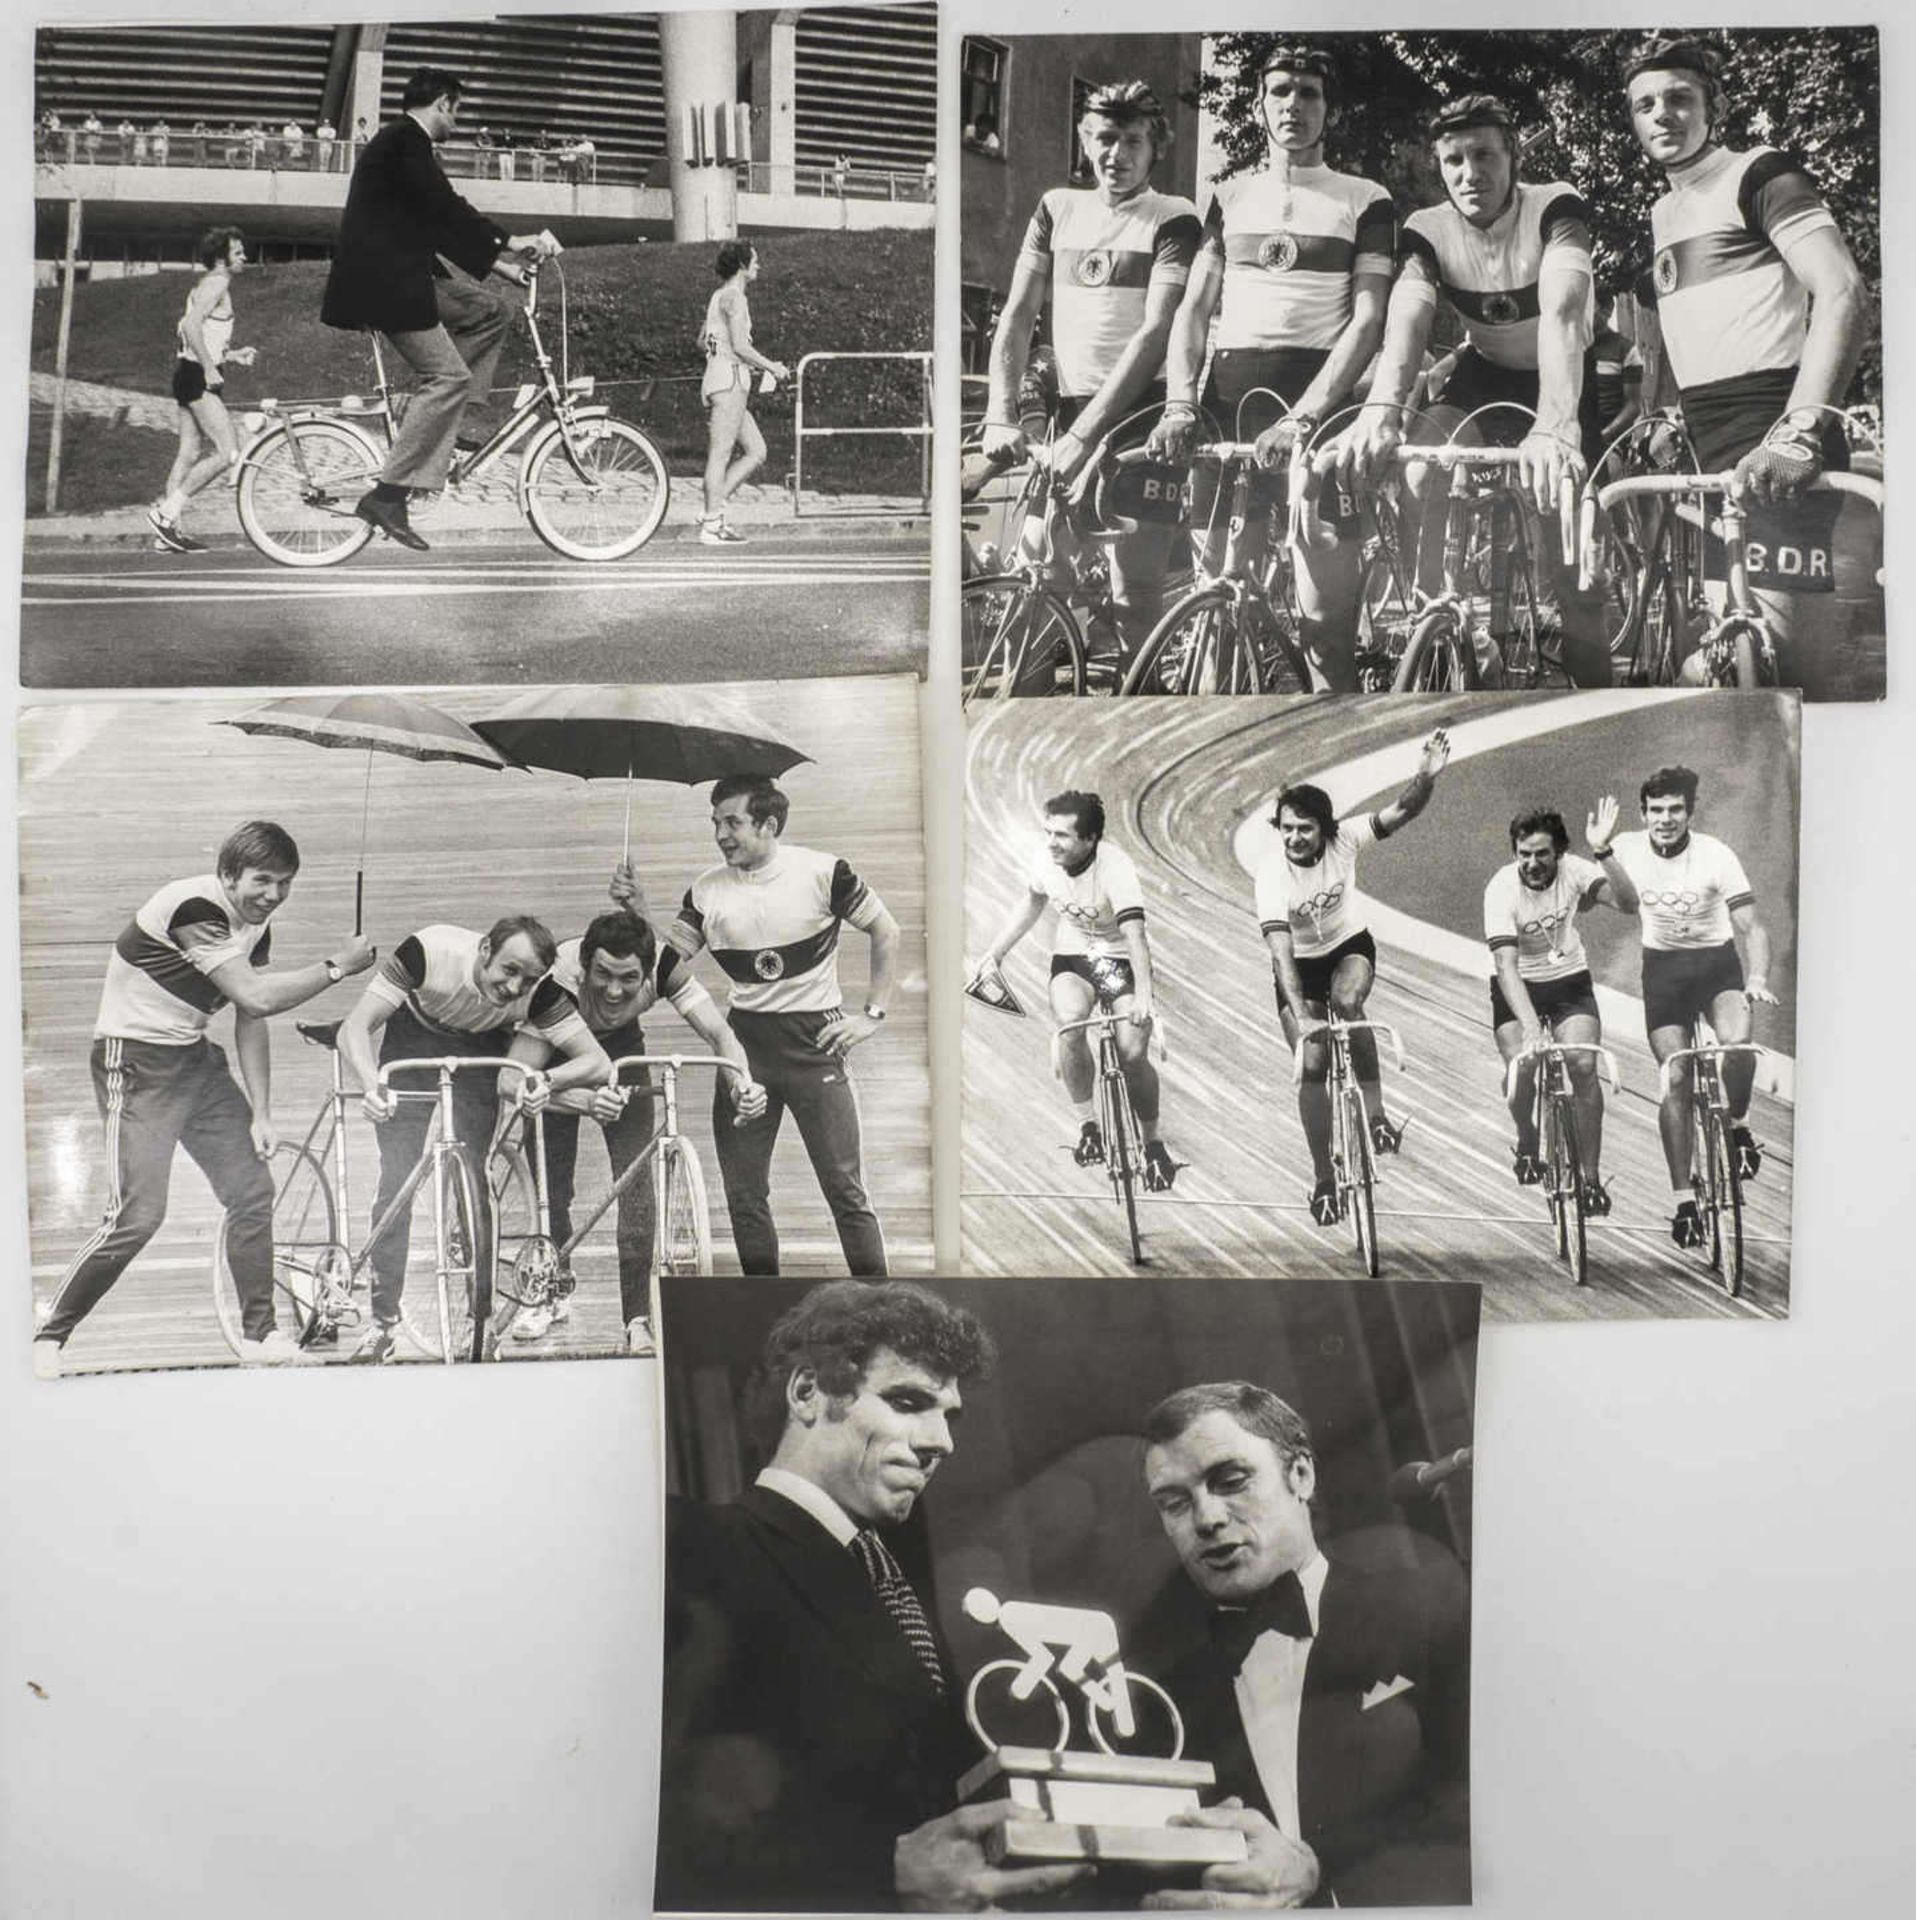 Lot 18 Pressefotos "Radrennfahrer" u. a. Eddy Merckx, Dietrich Thurau, Pater Post, Gregor Braun, - Bild 3 aus 3